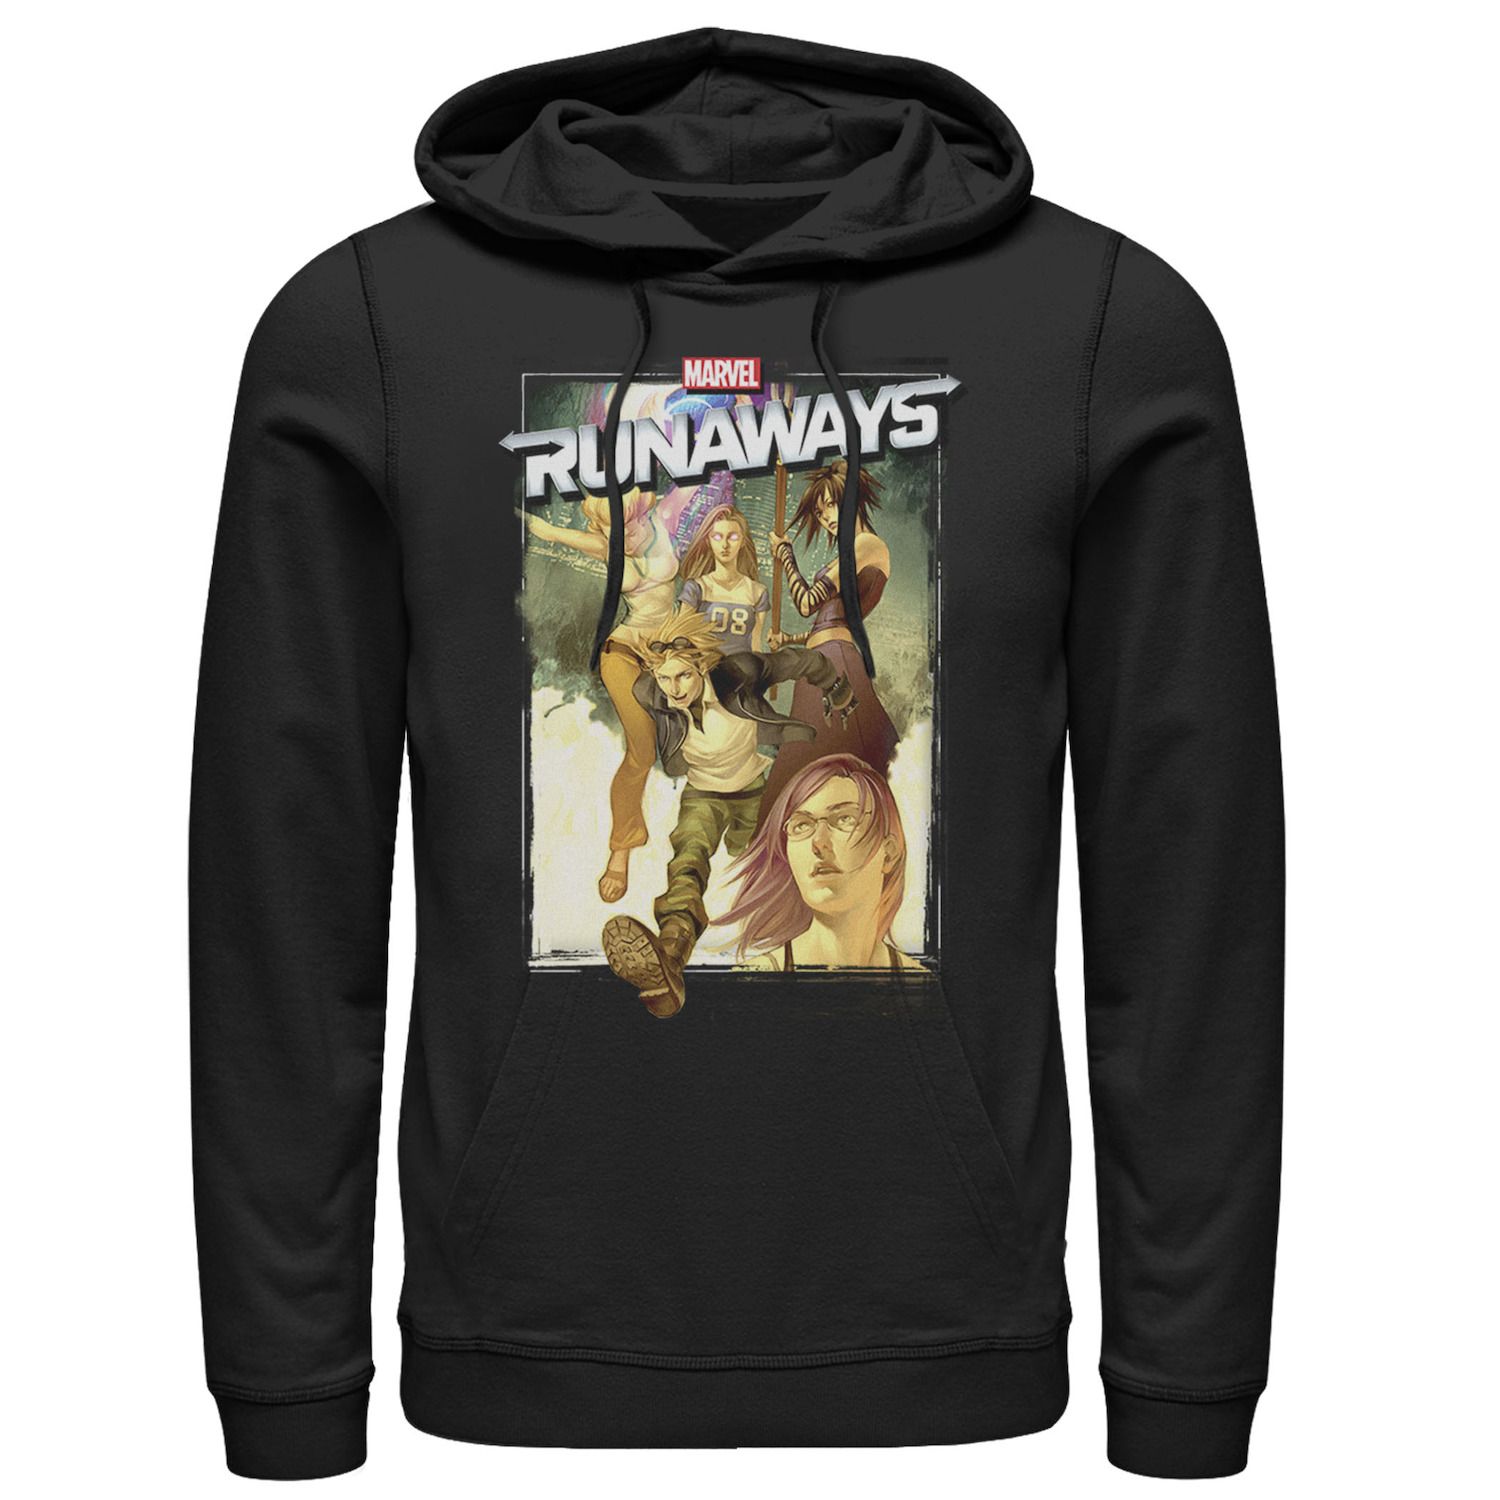 Мужская худи с графическим плакатом Runaways Group Marvel мужская худи с графическим плакатом runaways group marvel